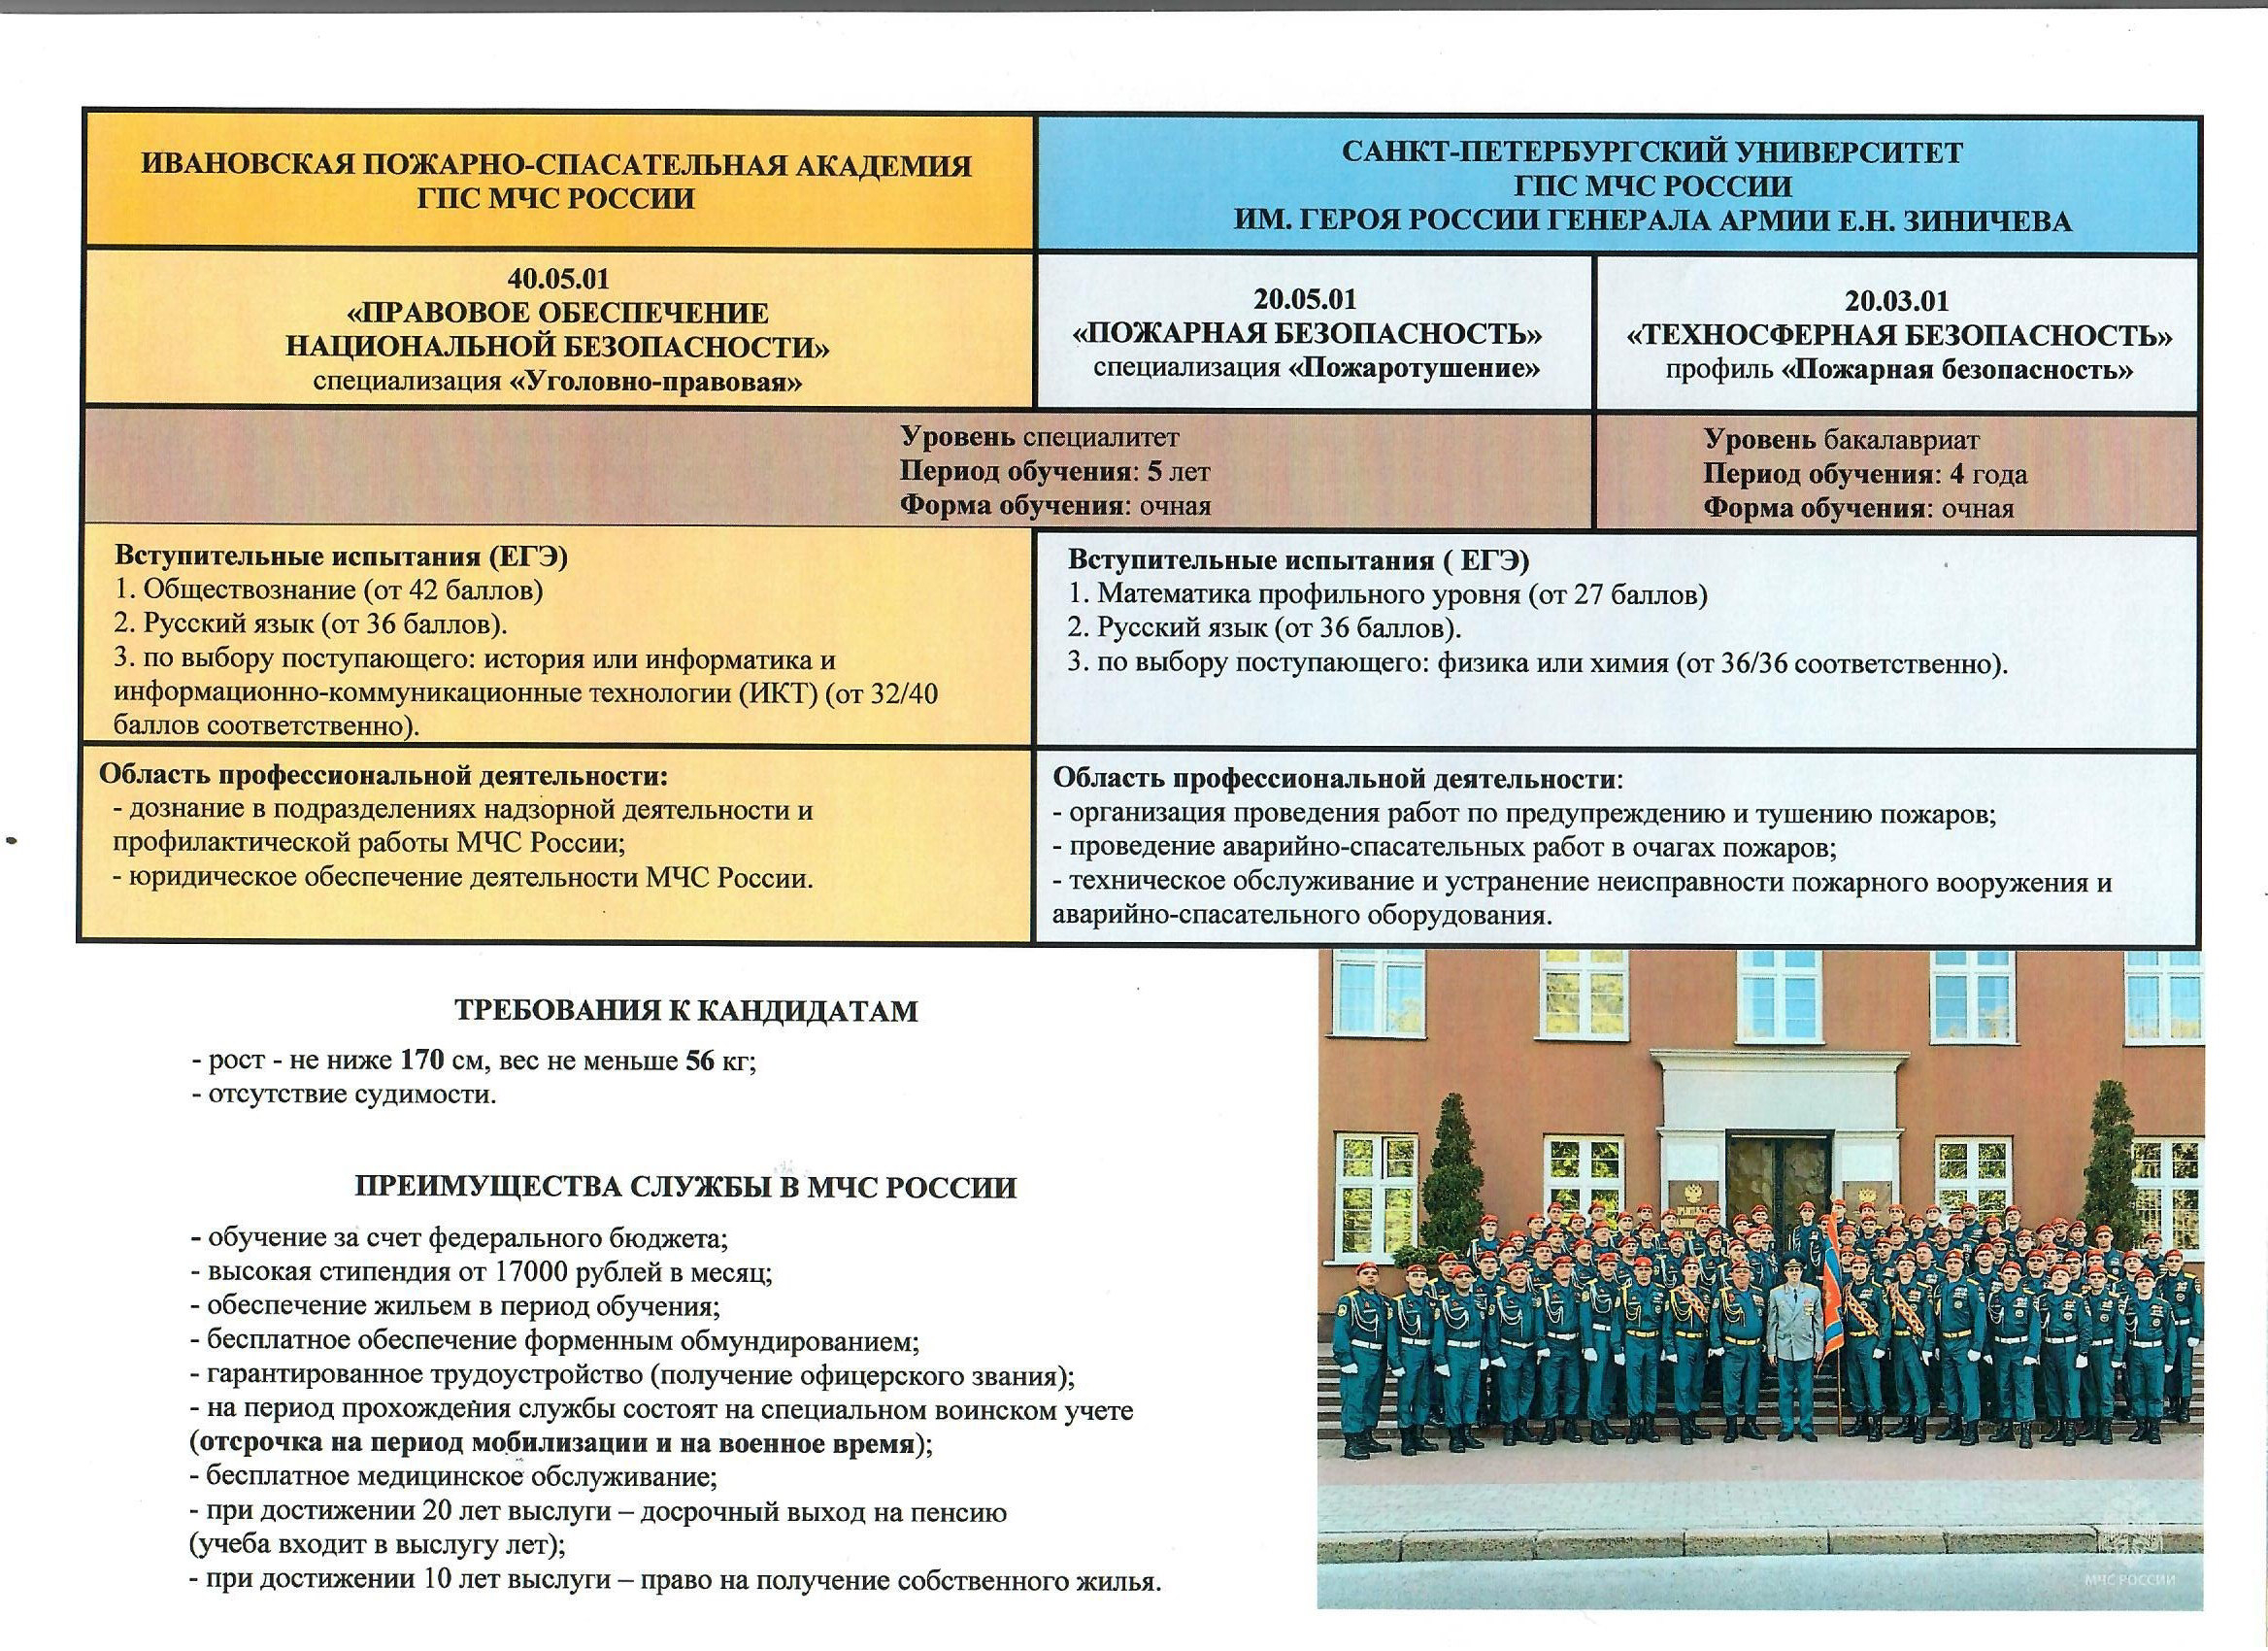 Информация абитуриентам для поступления в учебные заведения высшего профессионального образования МЧС России.